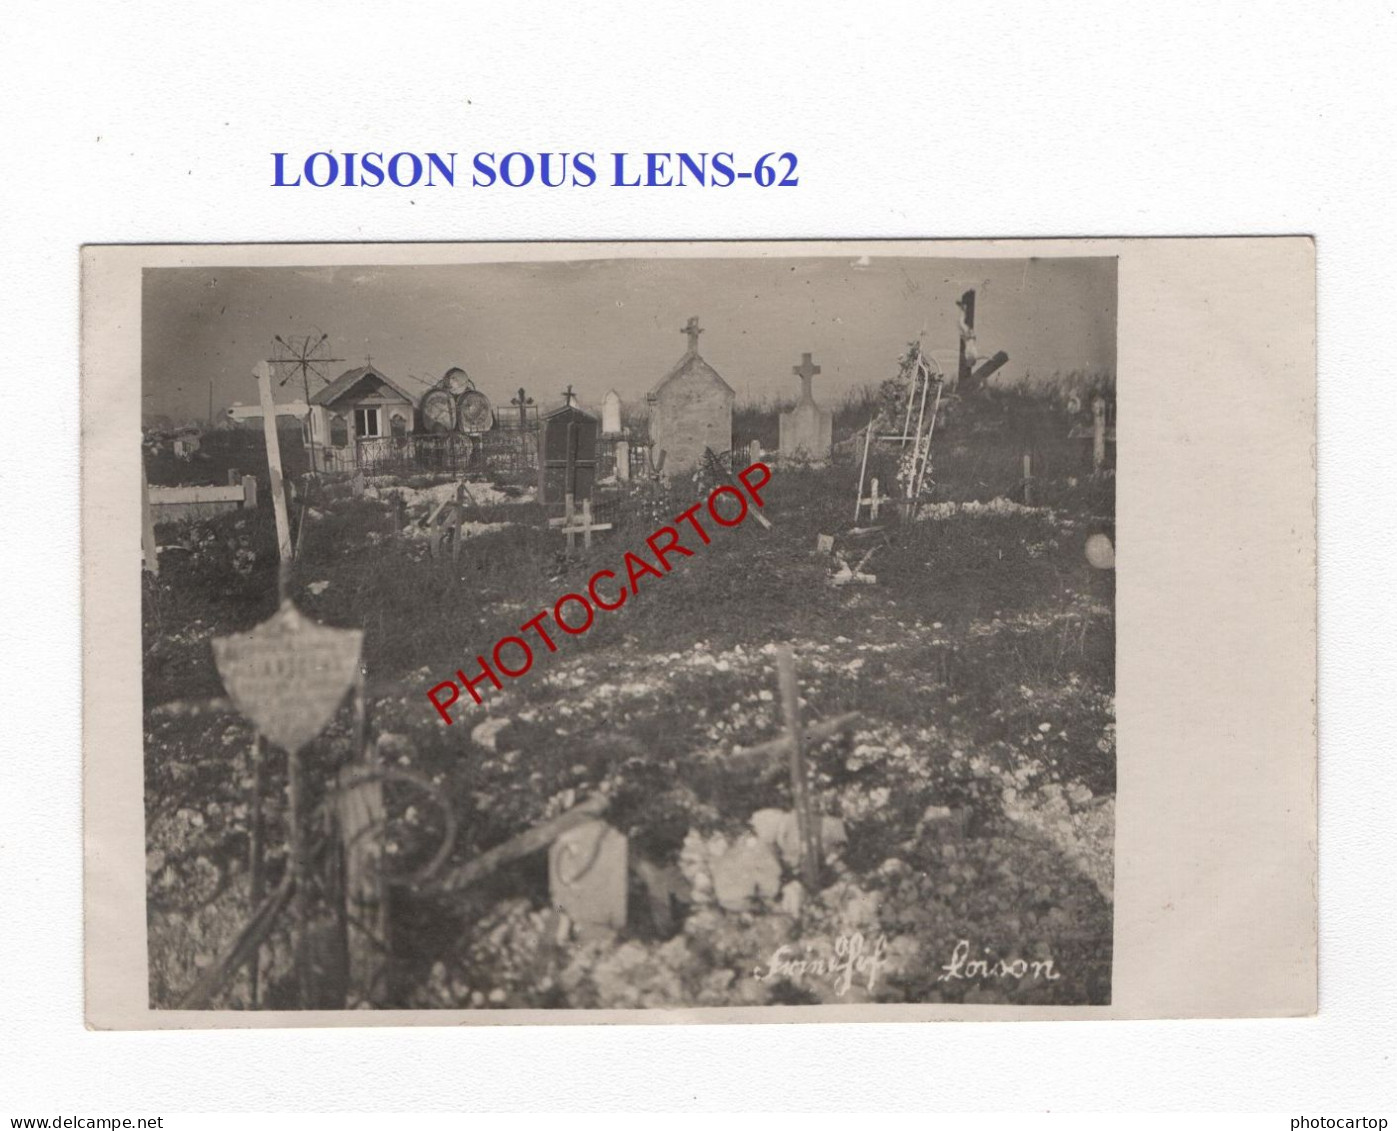 LOISON SOUS LENS-62-Cimetiere-Tombes-CARTE PHOTO Allemande-GUERRE 14-18-1 WK-MILITARIA- - Cimetières Militaires